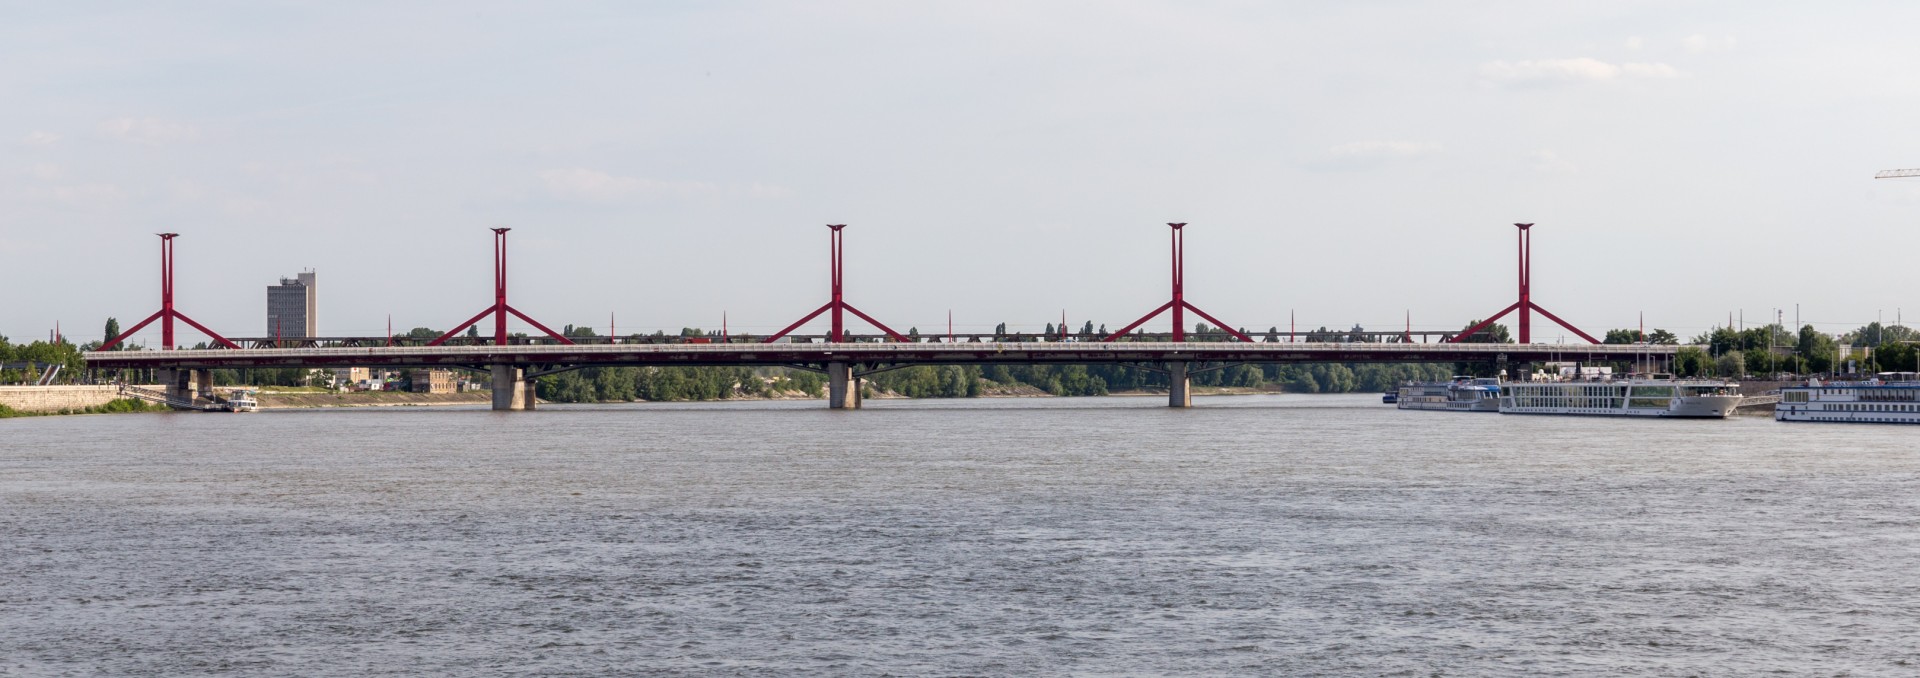 Rakoczi híd (Lagymanyosi híd) Budapest